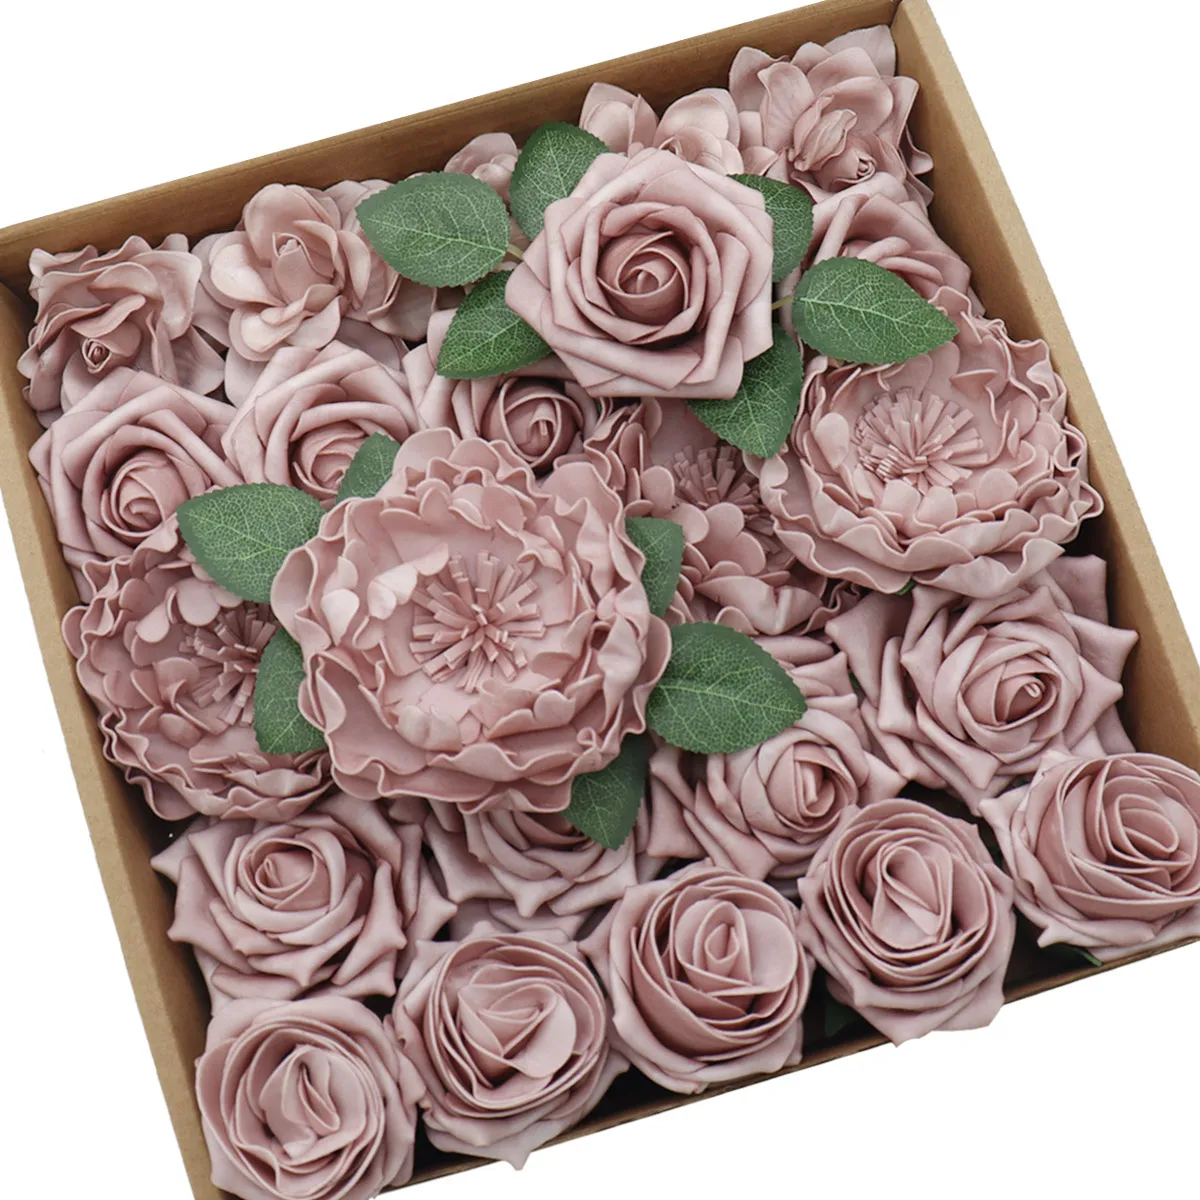 

D-Seven Artificial Flowers Dusty Rose Combo Box for DIY Wedding Bouquets Centerpieces Arrangements Bridal Shower Party Home